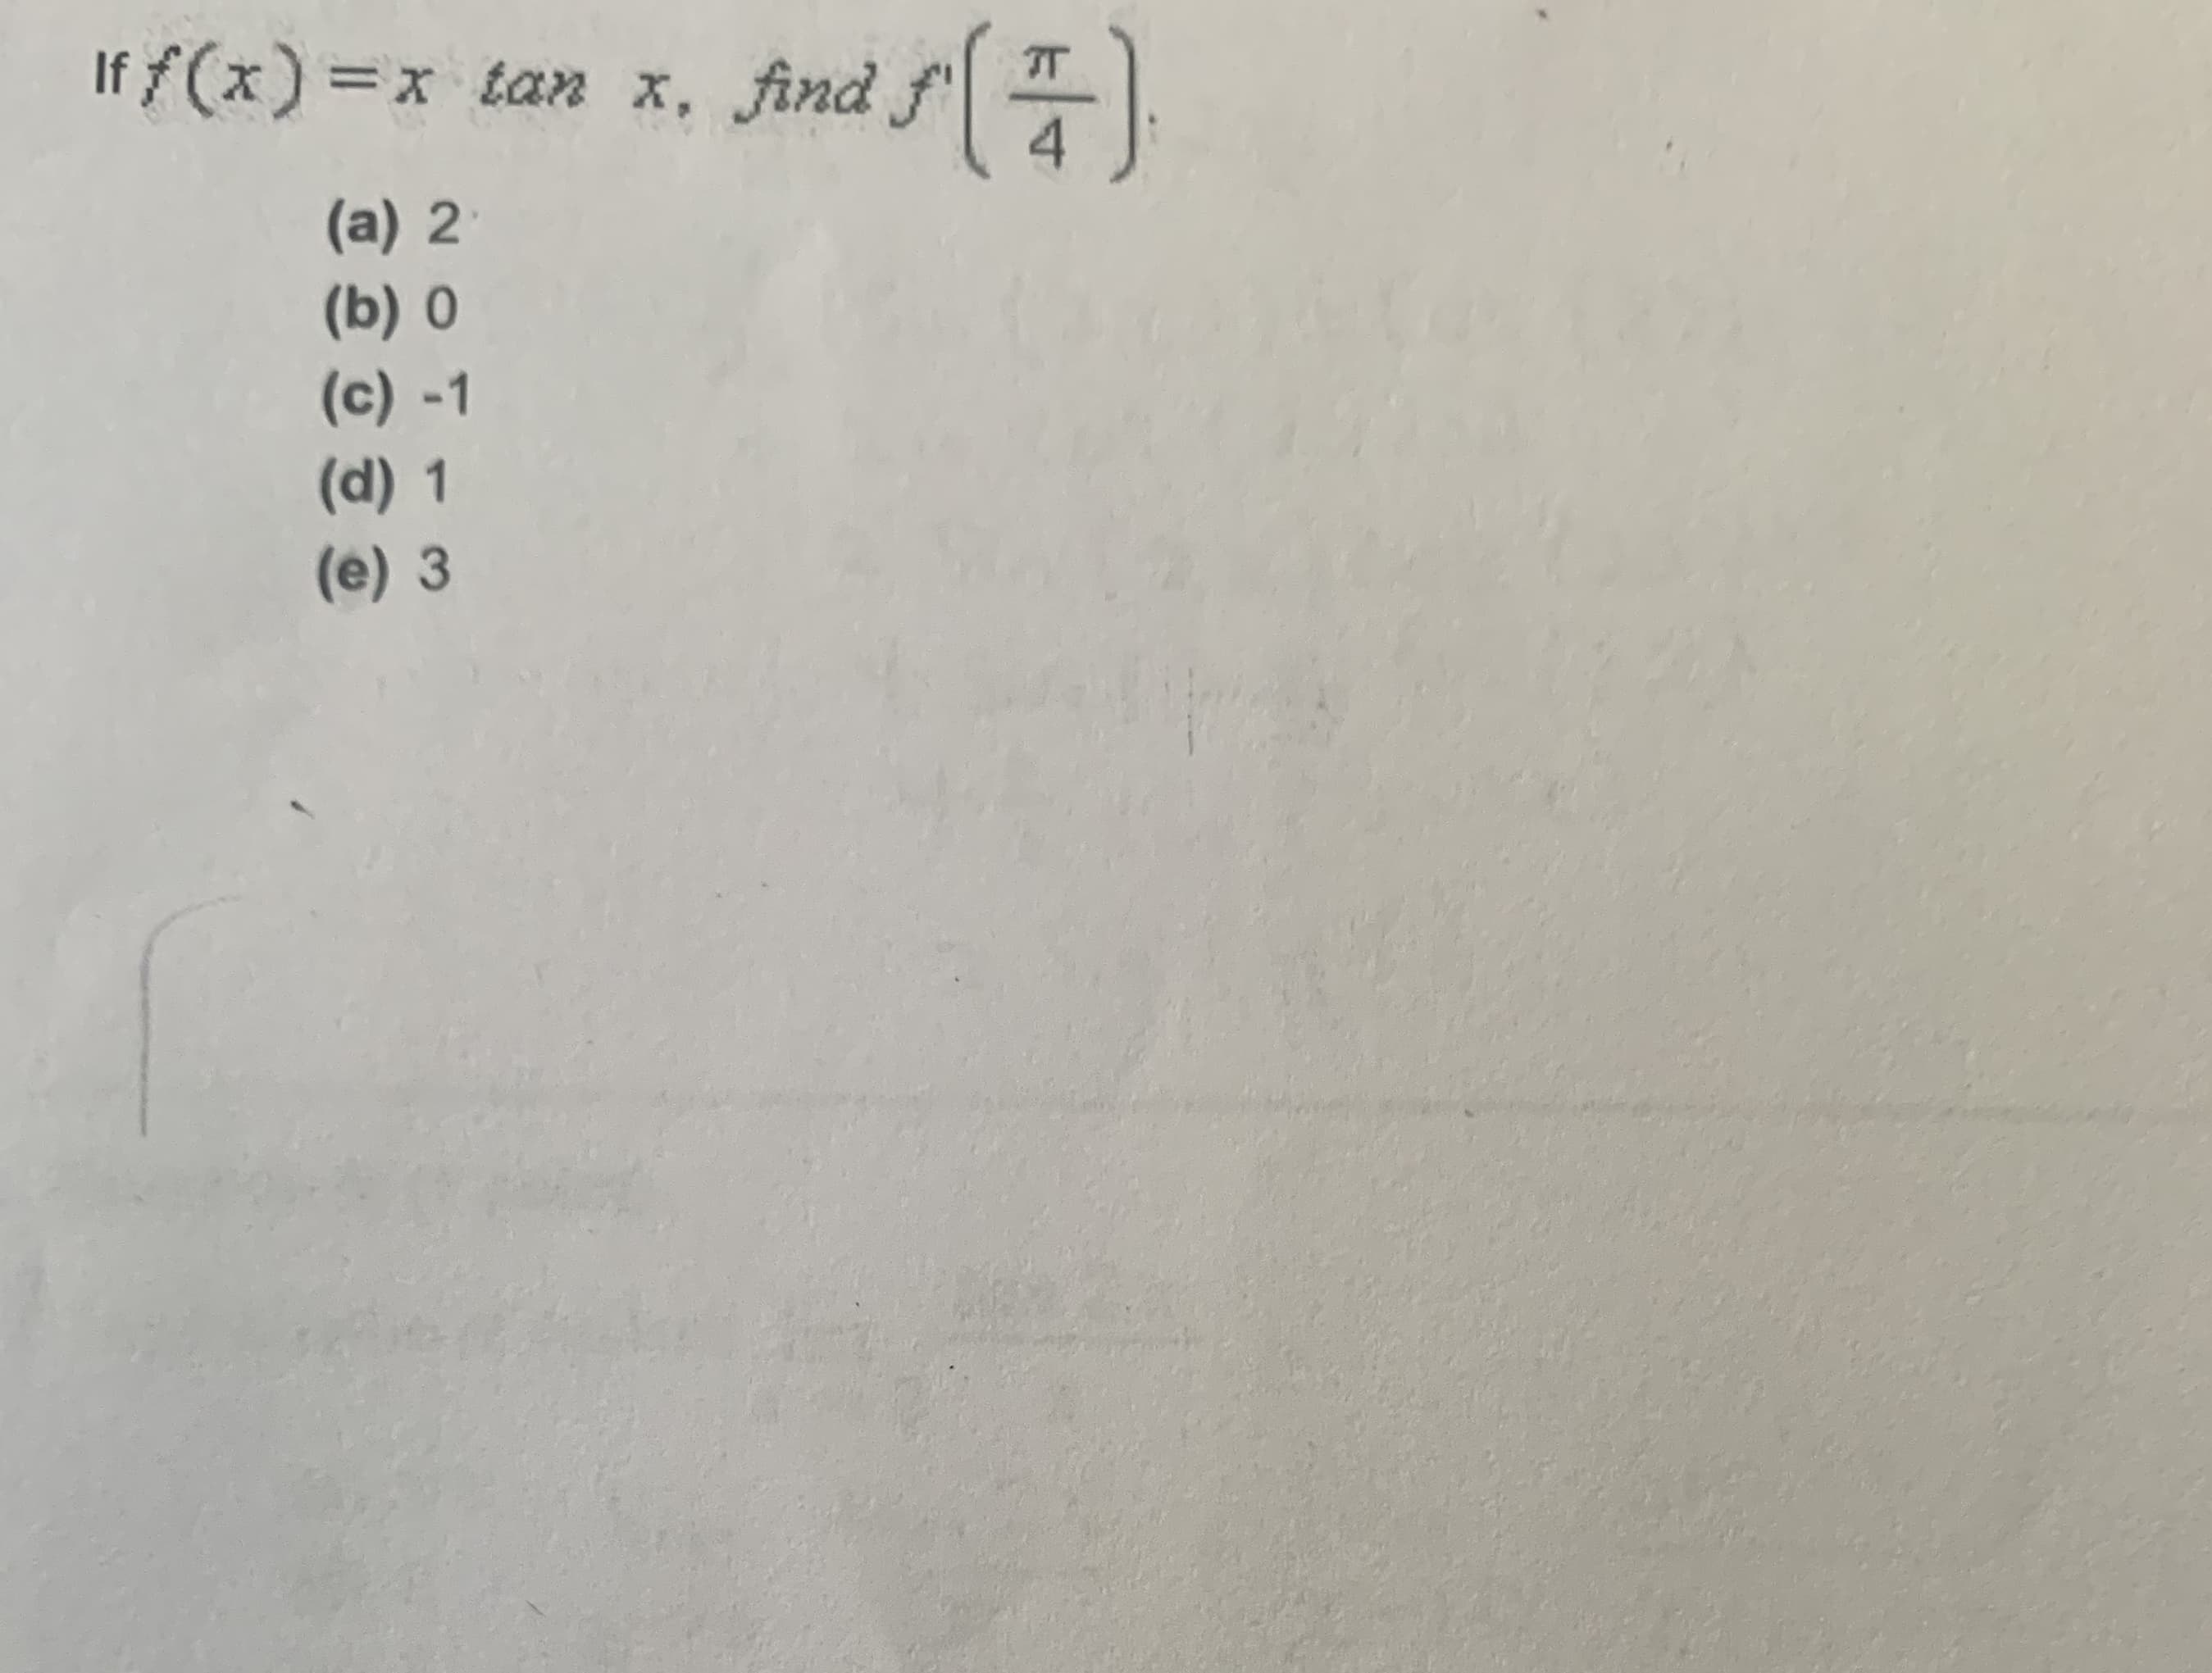 If f(x) =x tan x,
find f()
(a) 2
(b) 0
(c) -1
(d) 1
(e) 3
